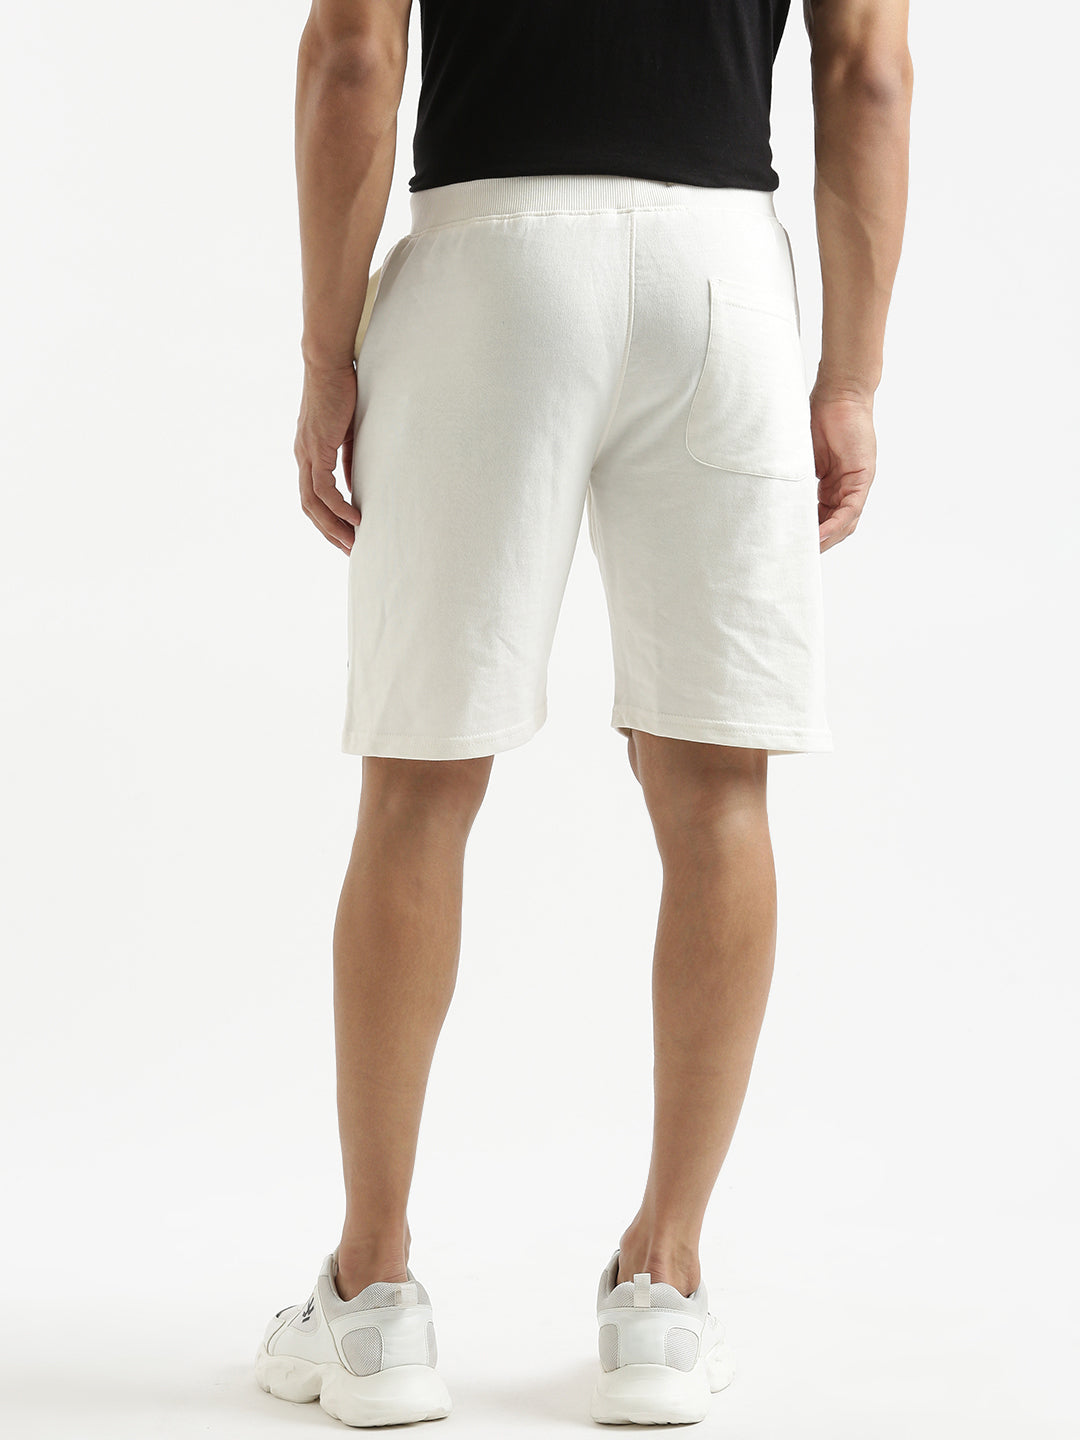 Printed Pulse Comfort Shorts